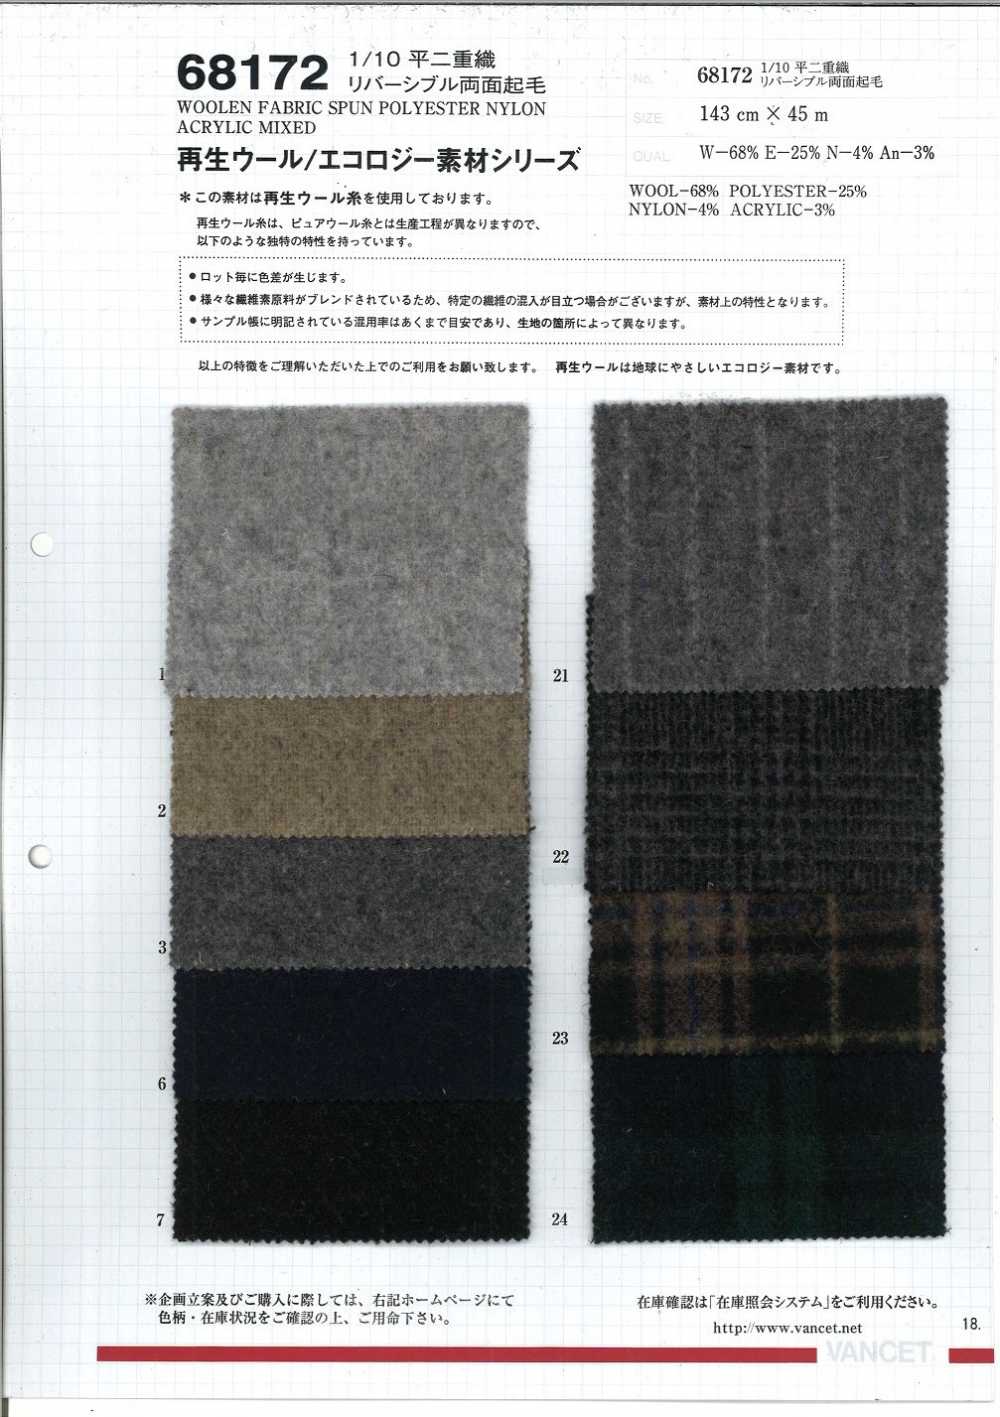 68172 1/10 Flat Double Weave, Wendbares Fuzzy Auf Beiden Seiten [verwendet Recycelten Wollfaden][Textilgewebe] VANCET